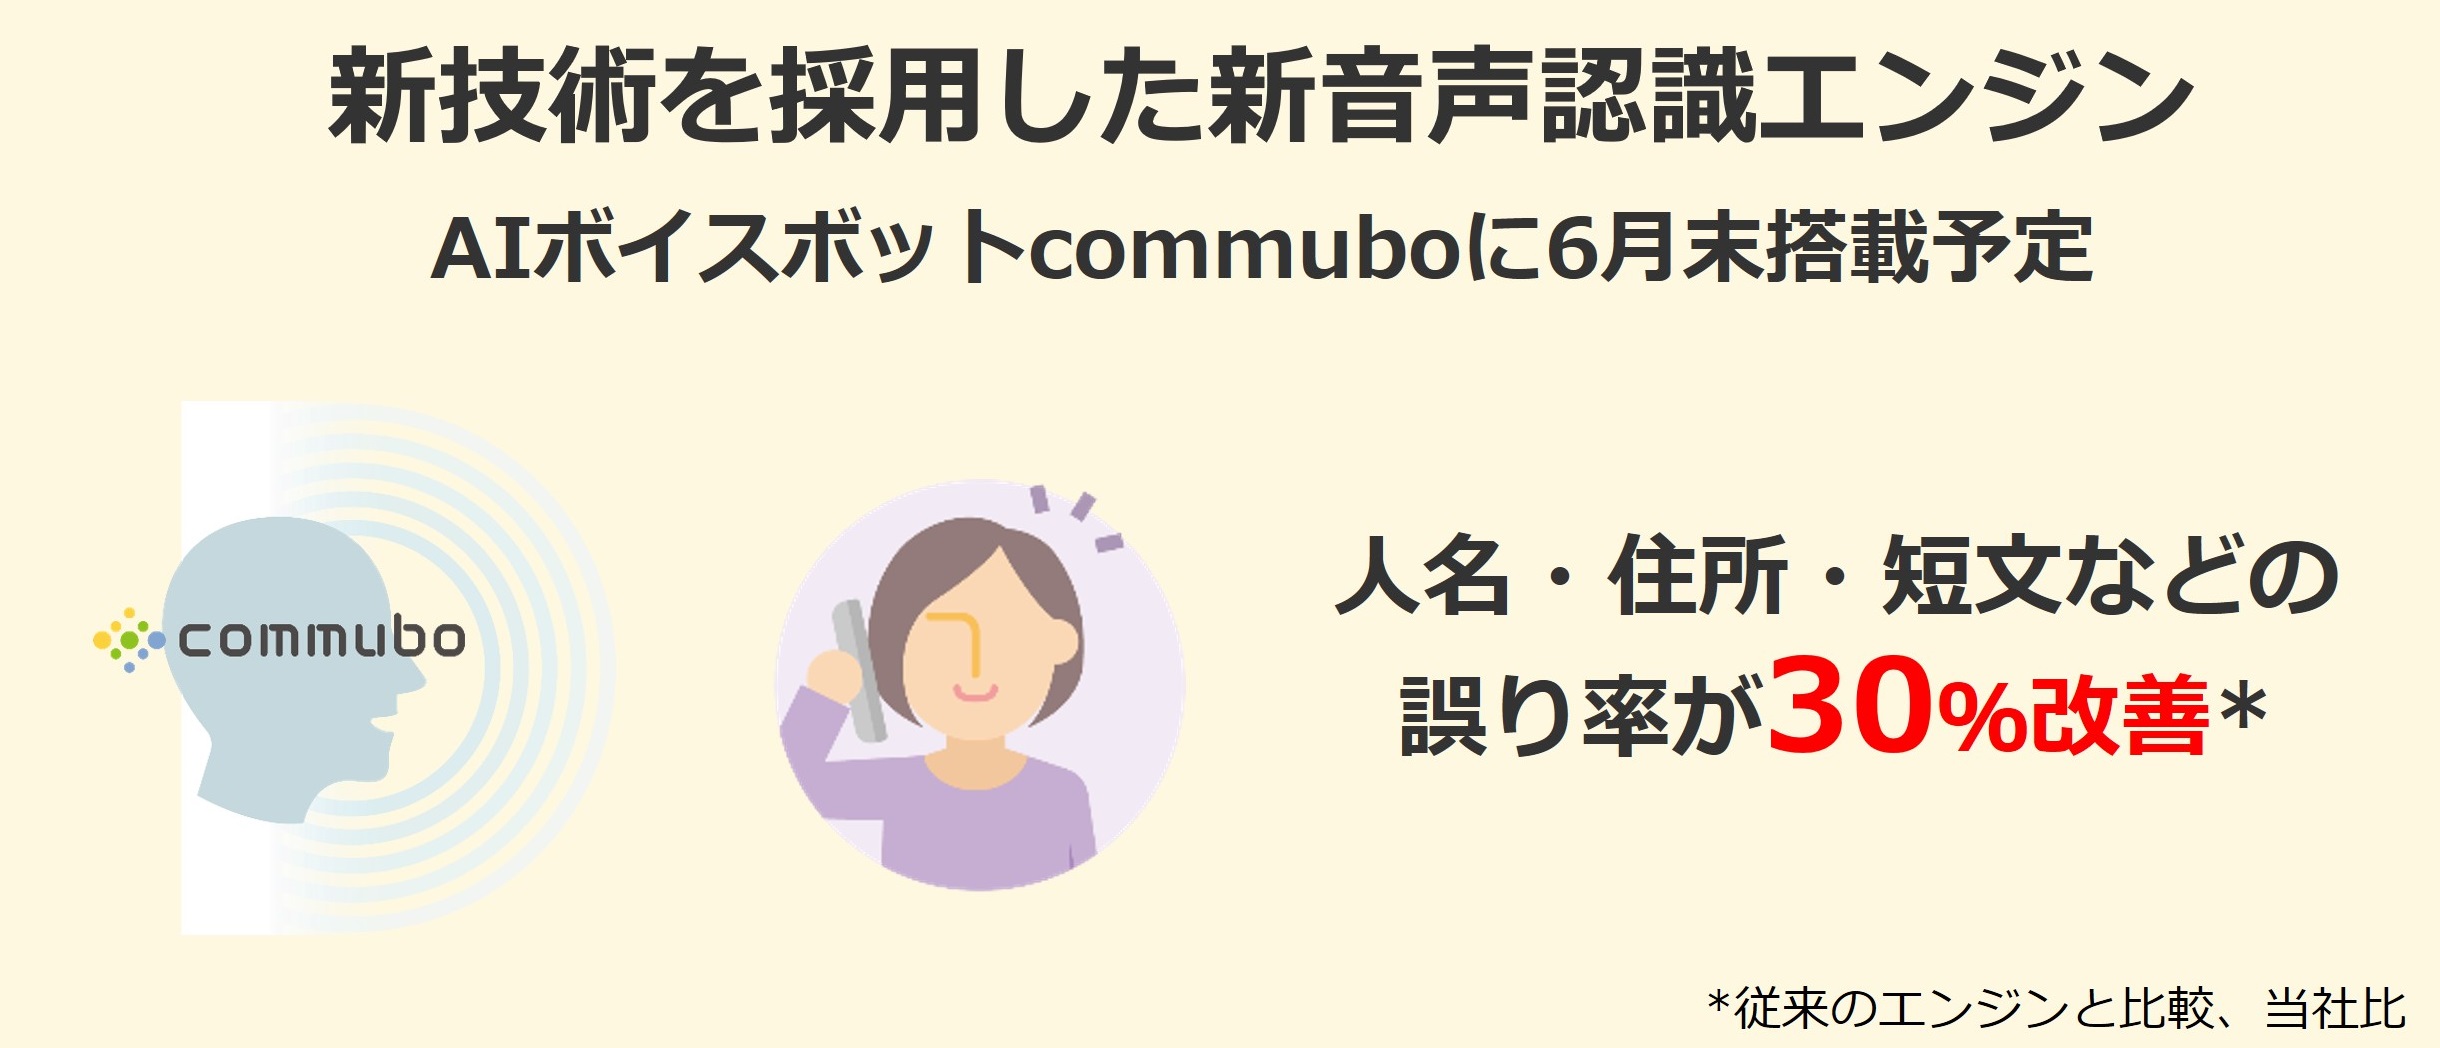 人名等の誤り率を30％改善、新音声認識エンジンを自社開発　日本語特有の課題に挑戦、AIボイスボット「commubo」に6月末搭載予定